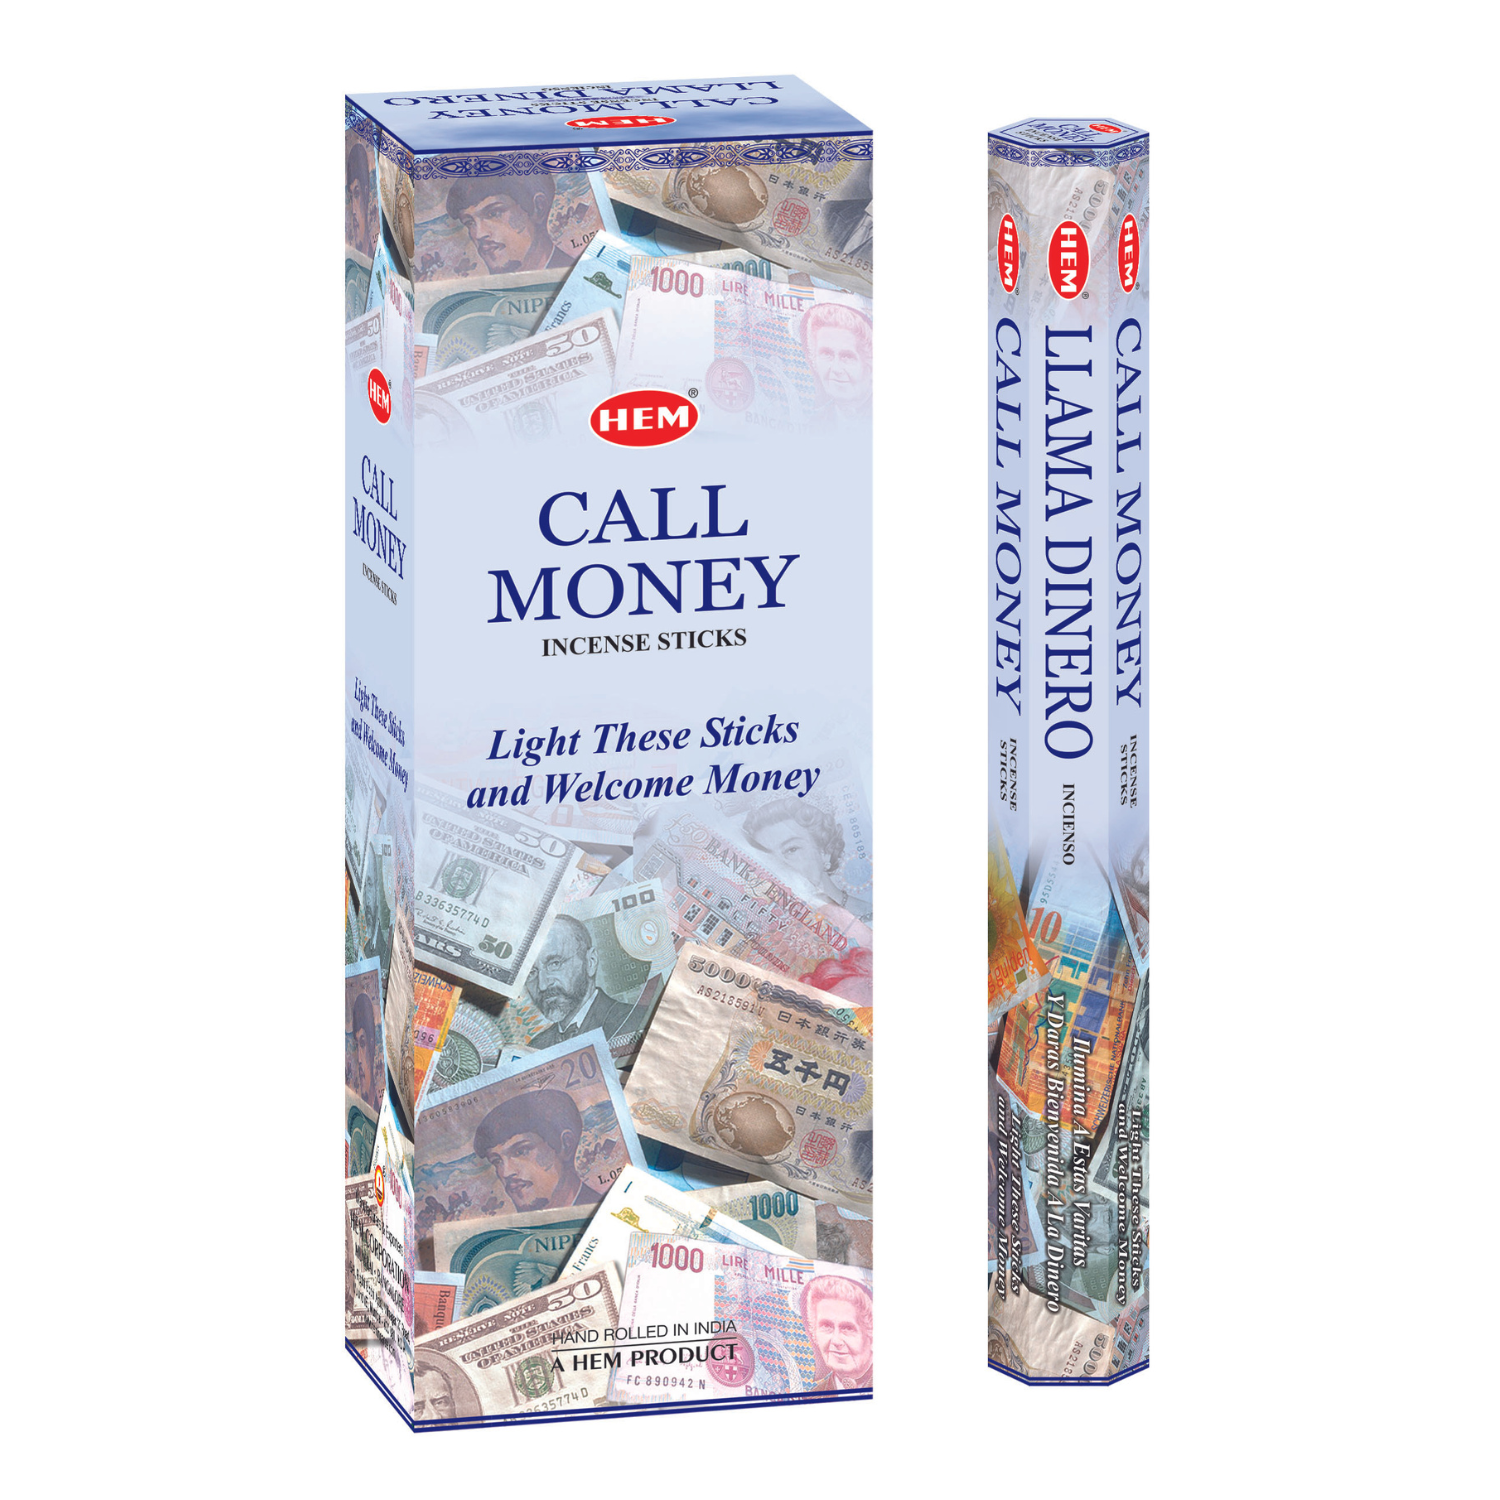 call-money-incense-sticks